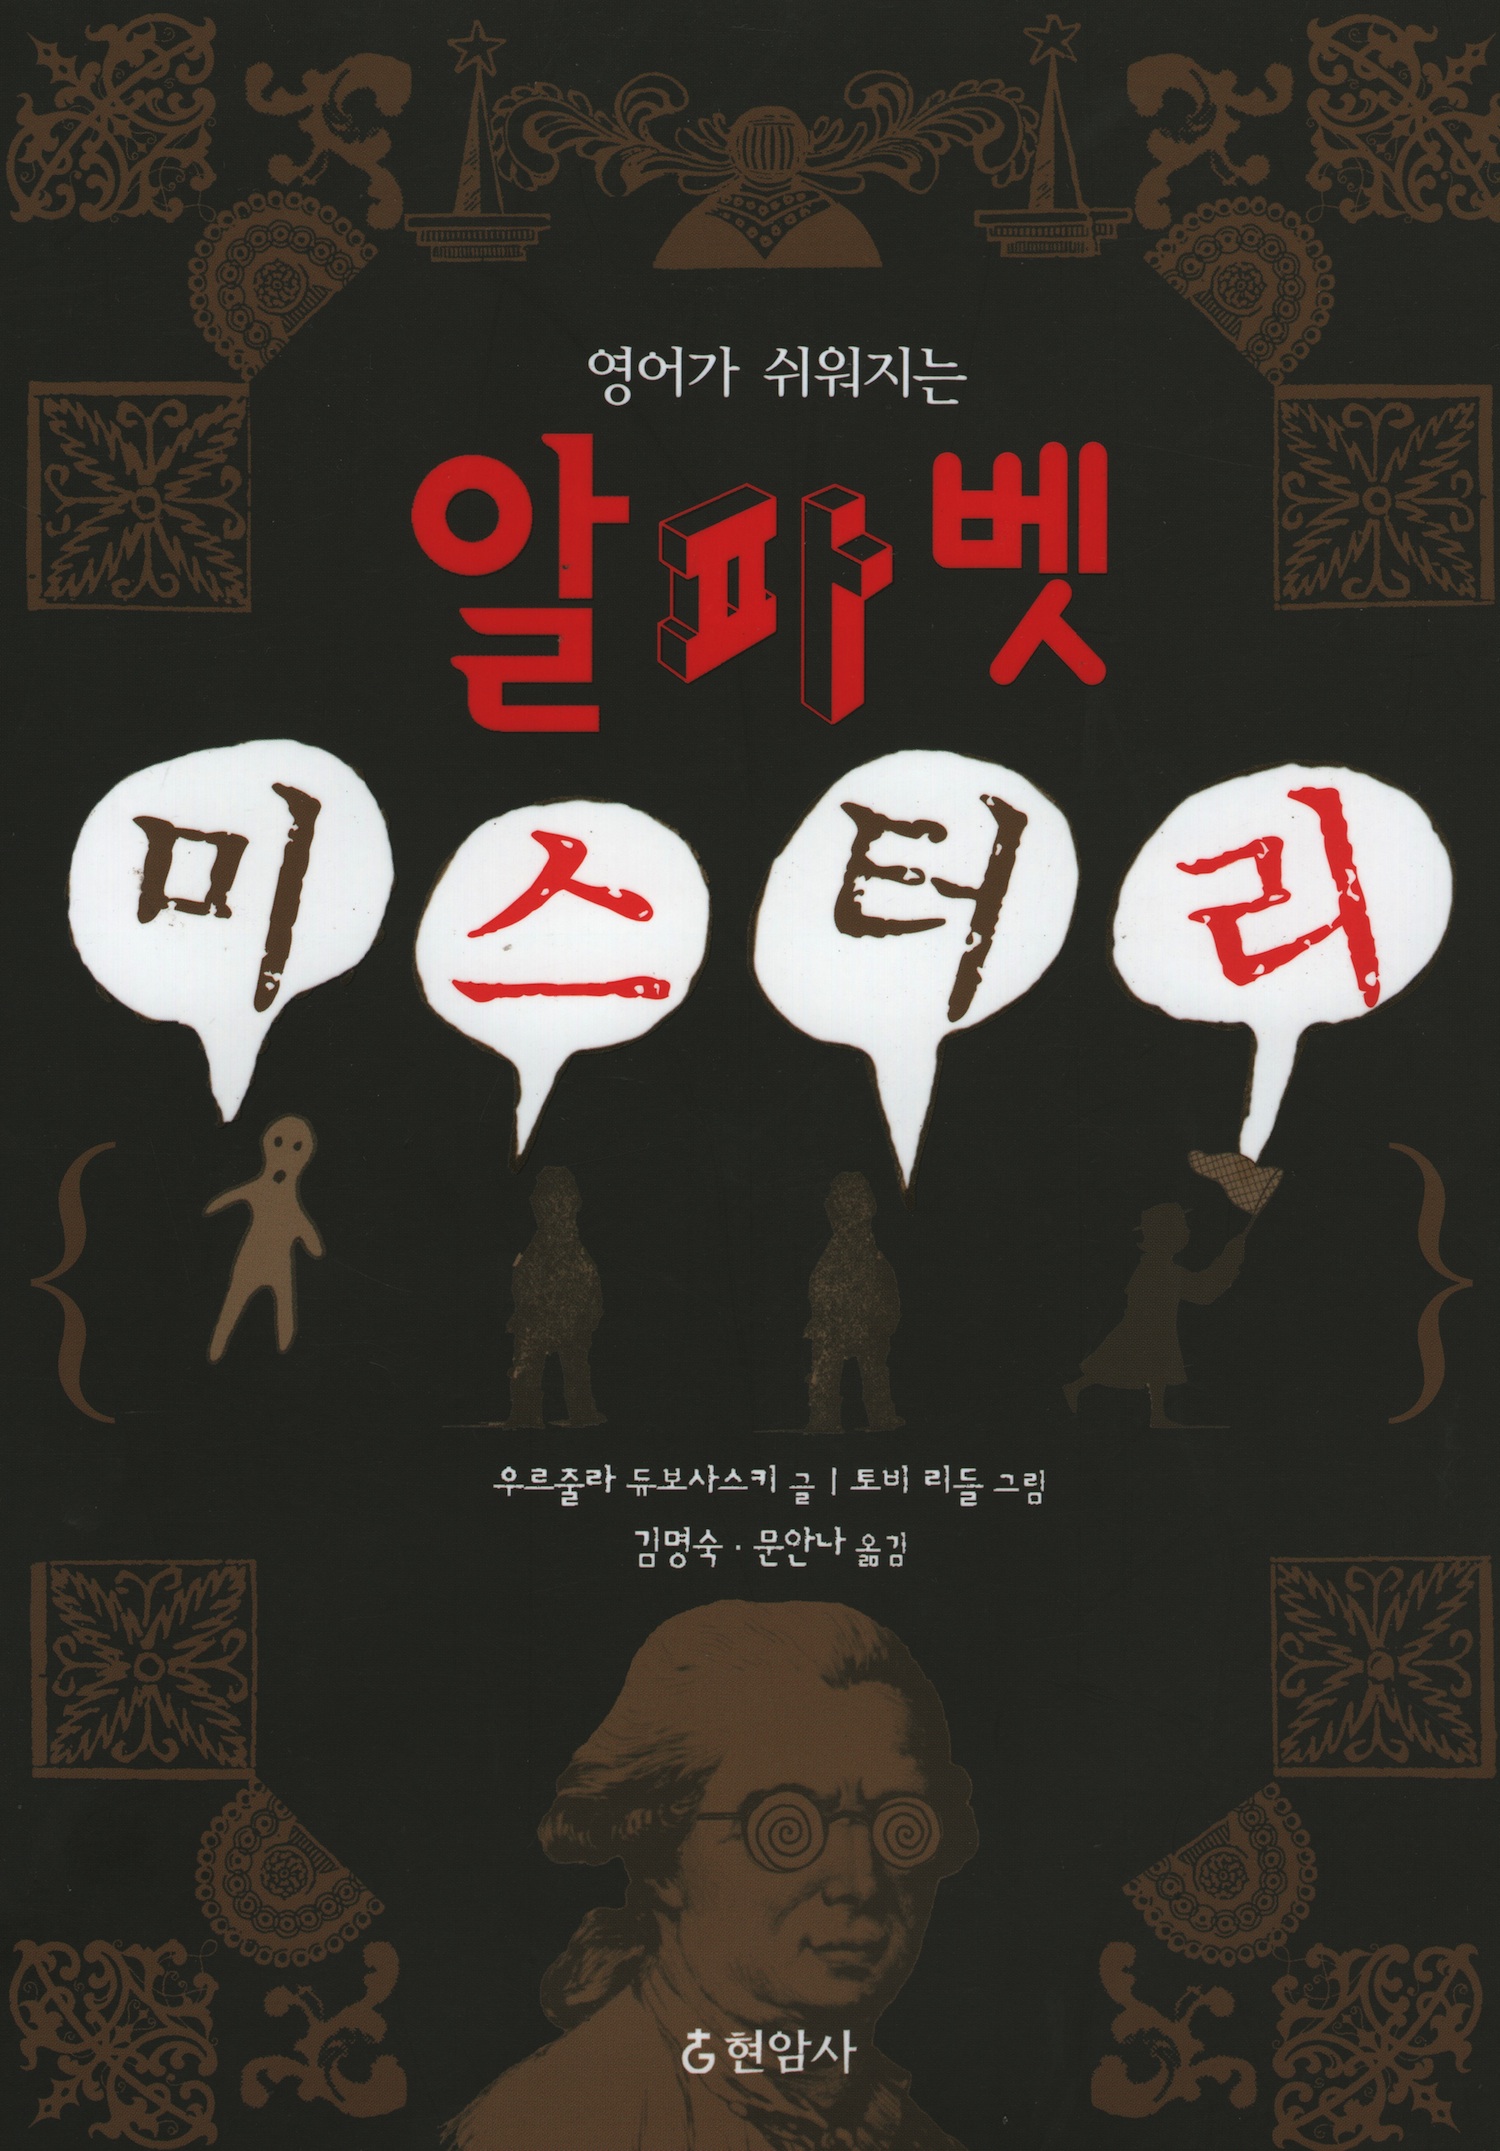 ursula book korean 1500px.jpg